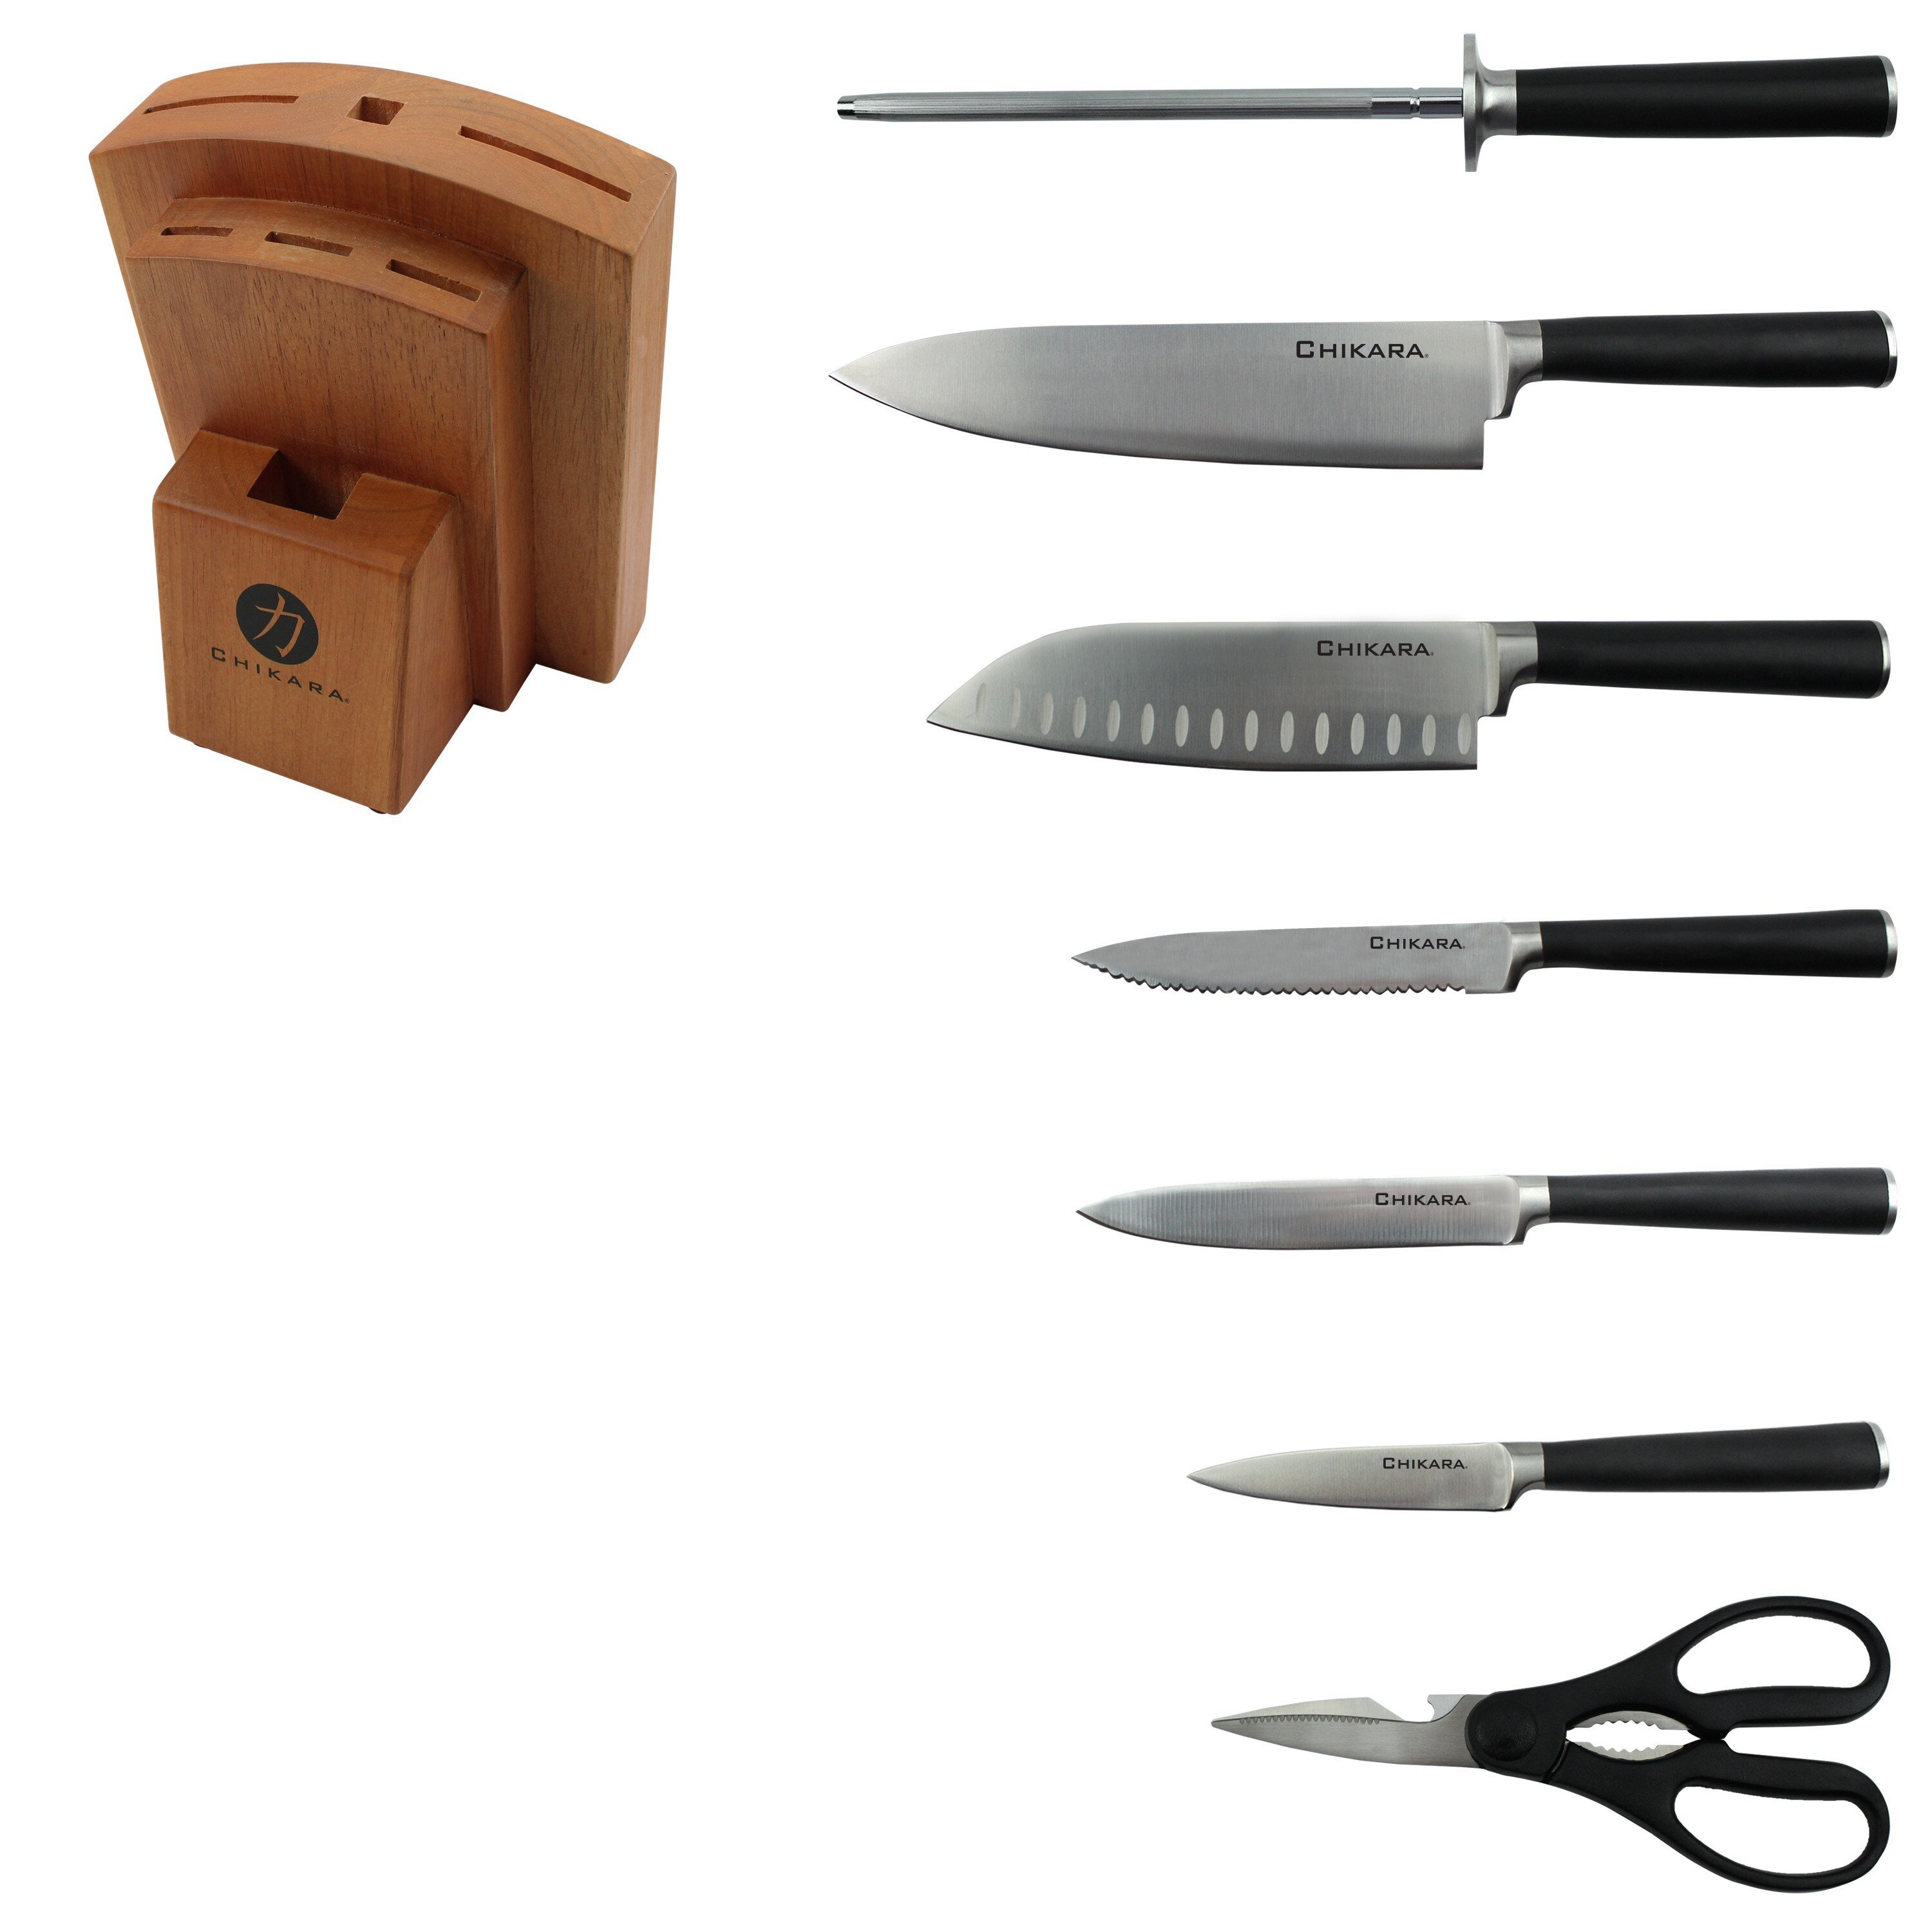 https://assets.wfcdn.com/im/27296051/compr-r85/1989/198998517/ginsu-chikara-8-piece-stainless-steel-knife-block-set.jpg